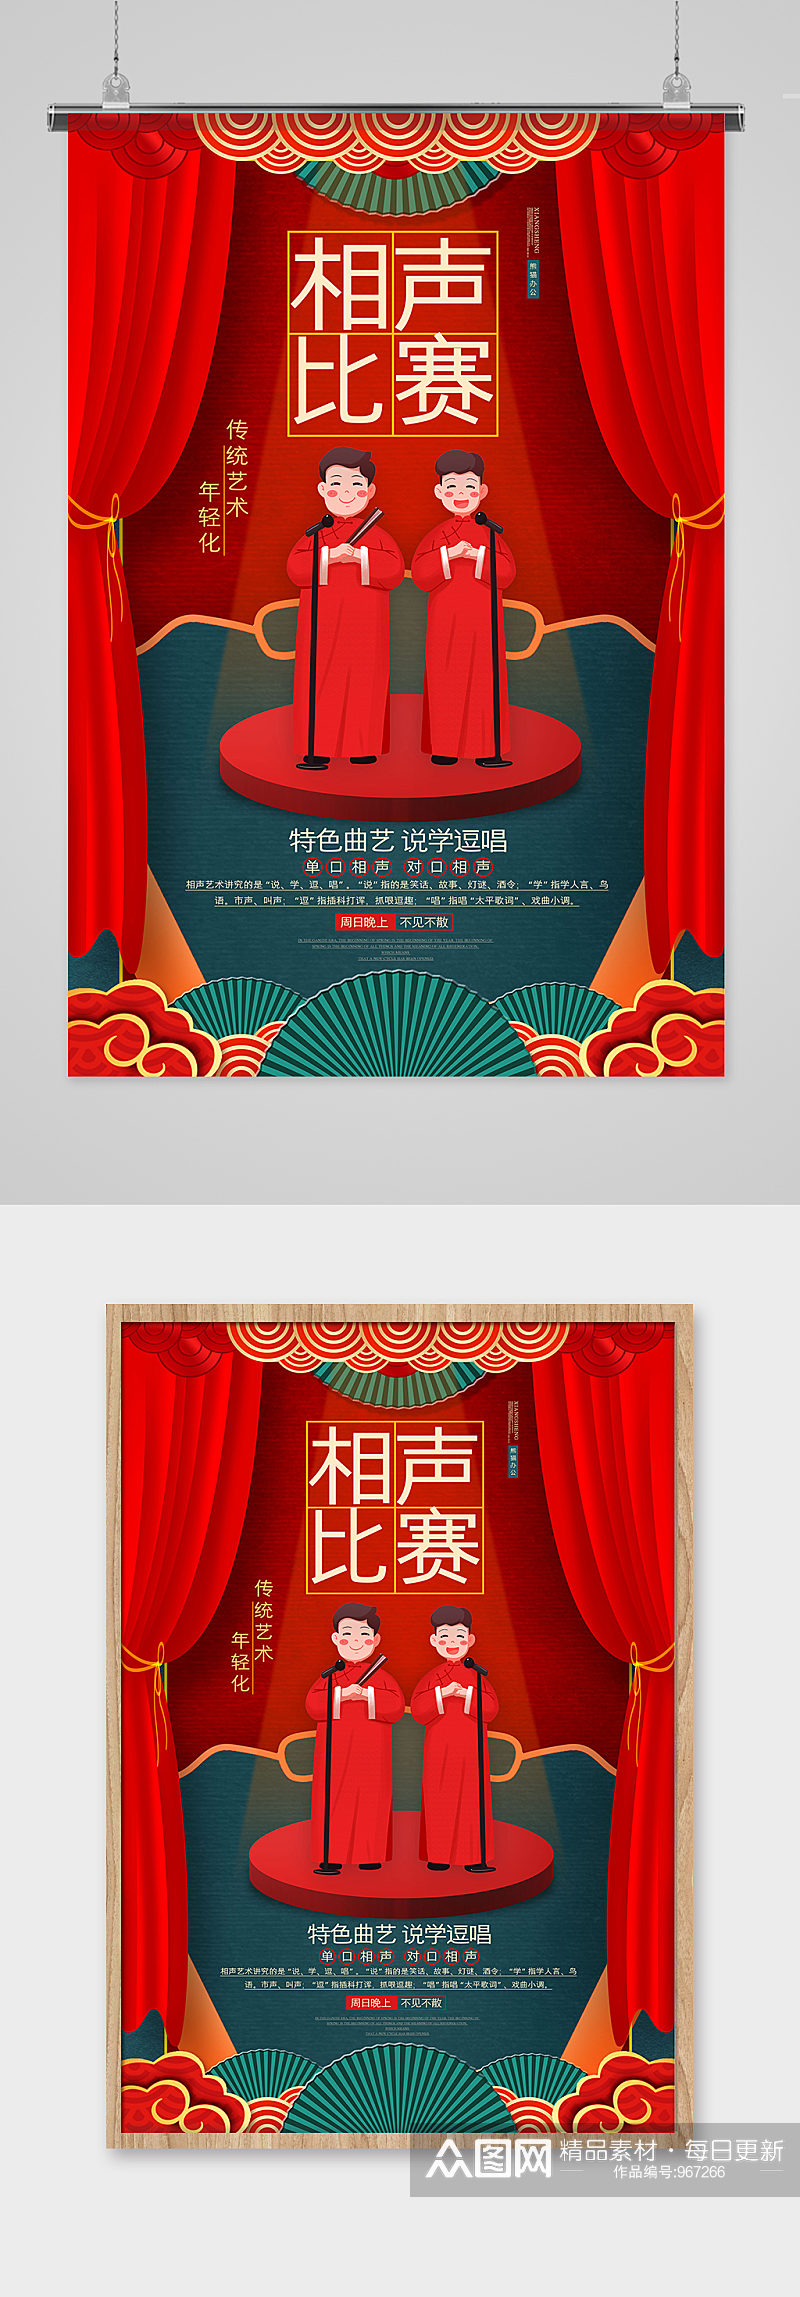 红色喜庆相声比赛海报设计素材